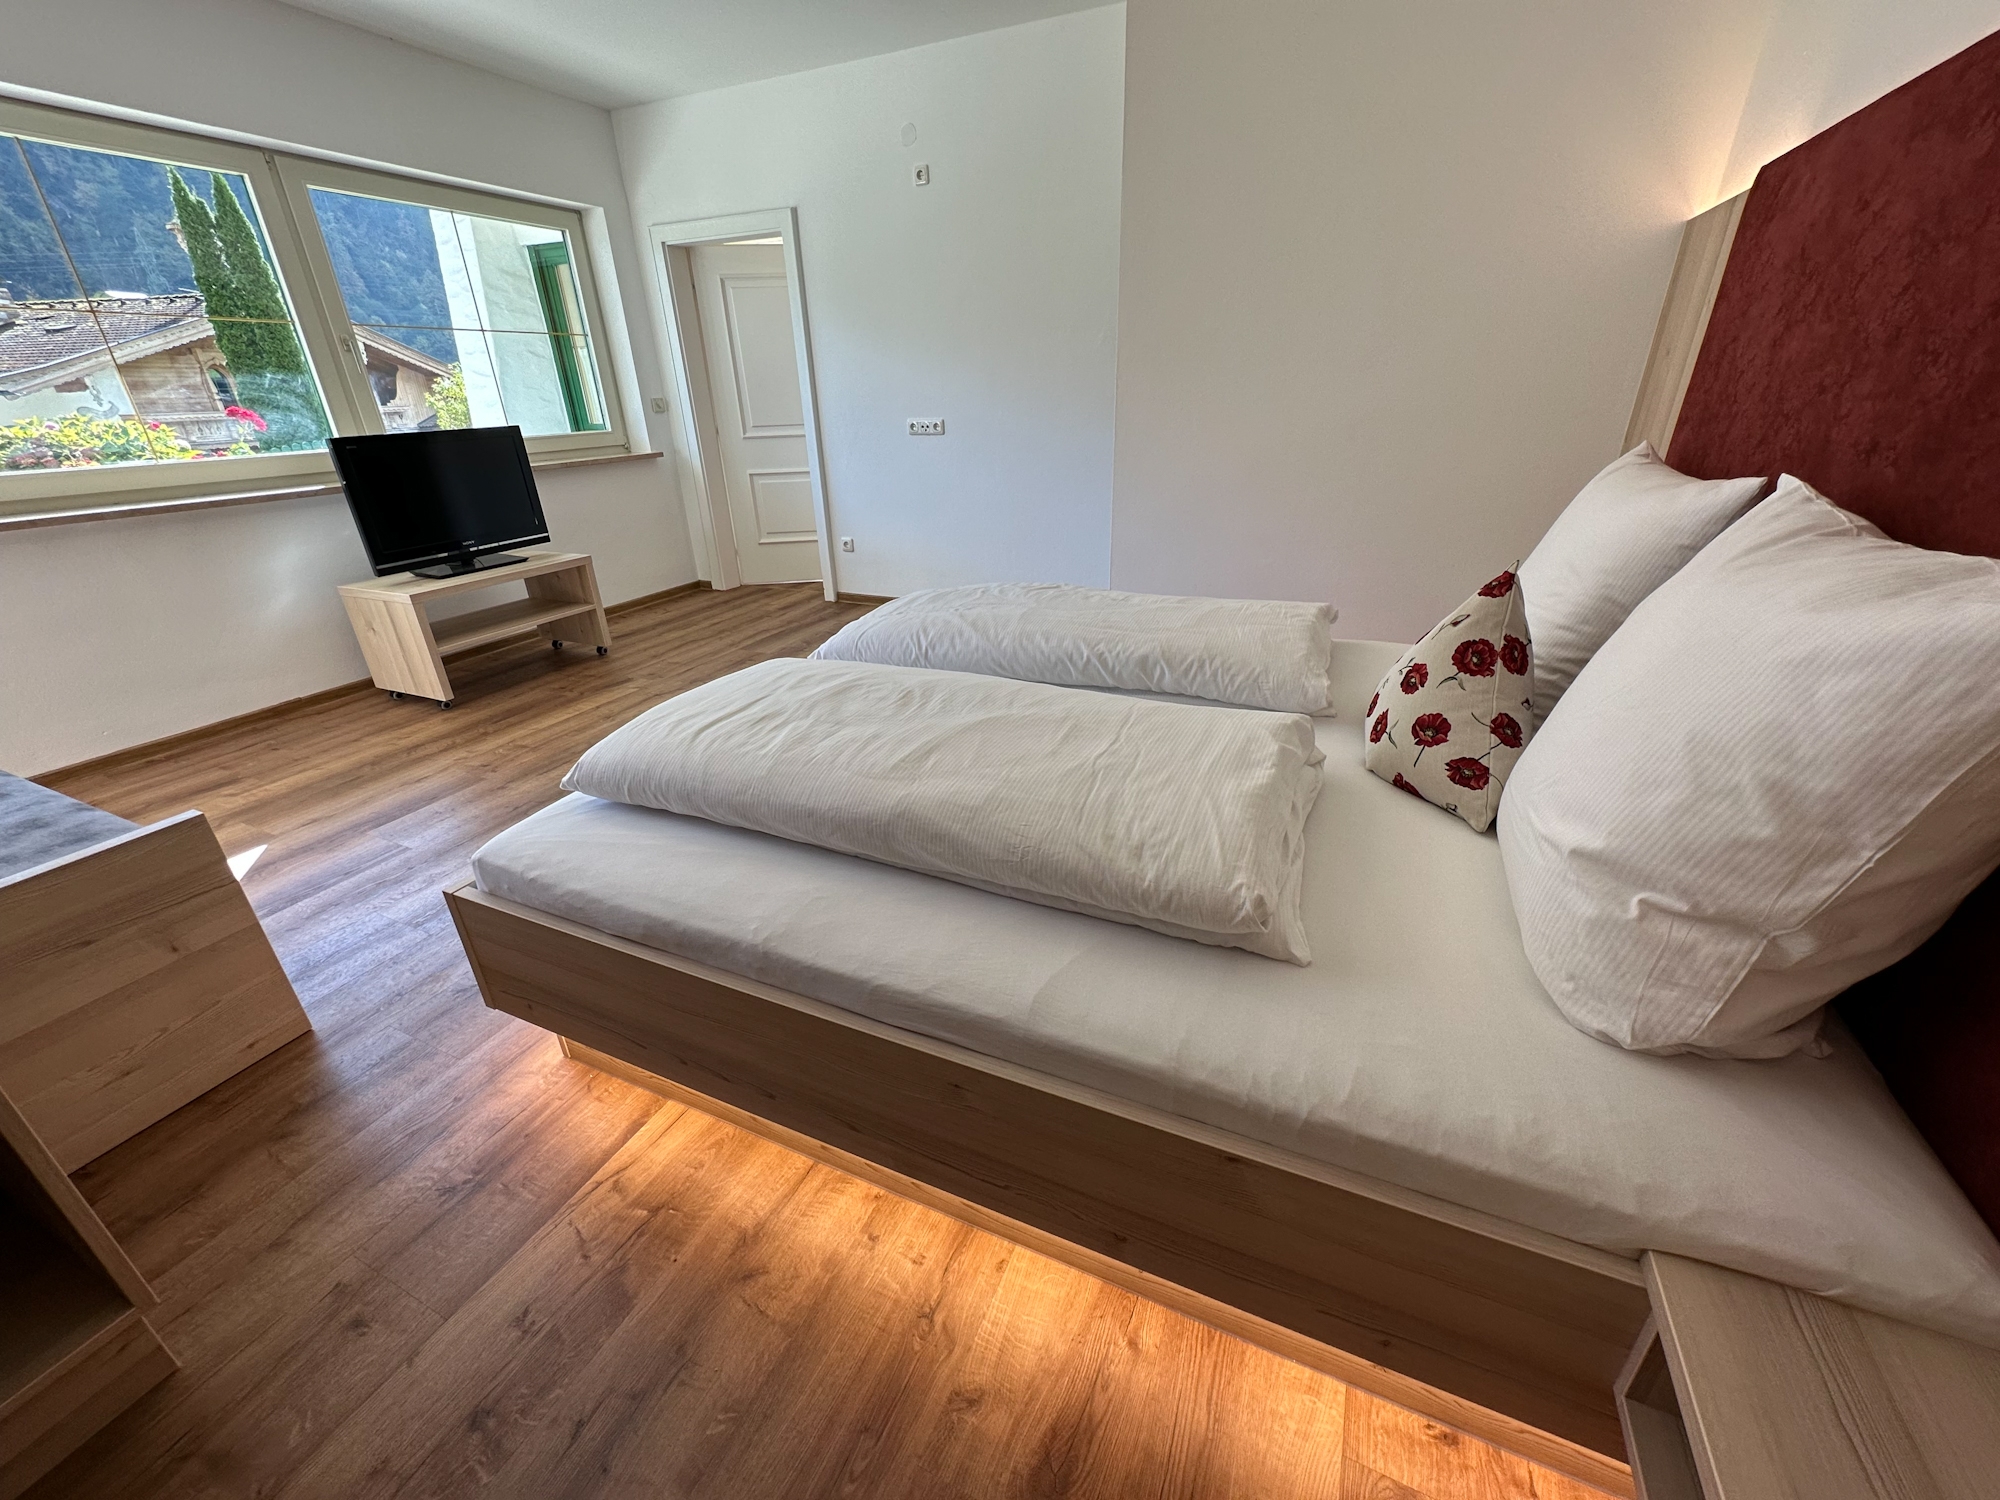 Appartementhaus Zillertal: Ferienwohnung für 2 Personen - Schlafzimmer (Beispiel)